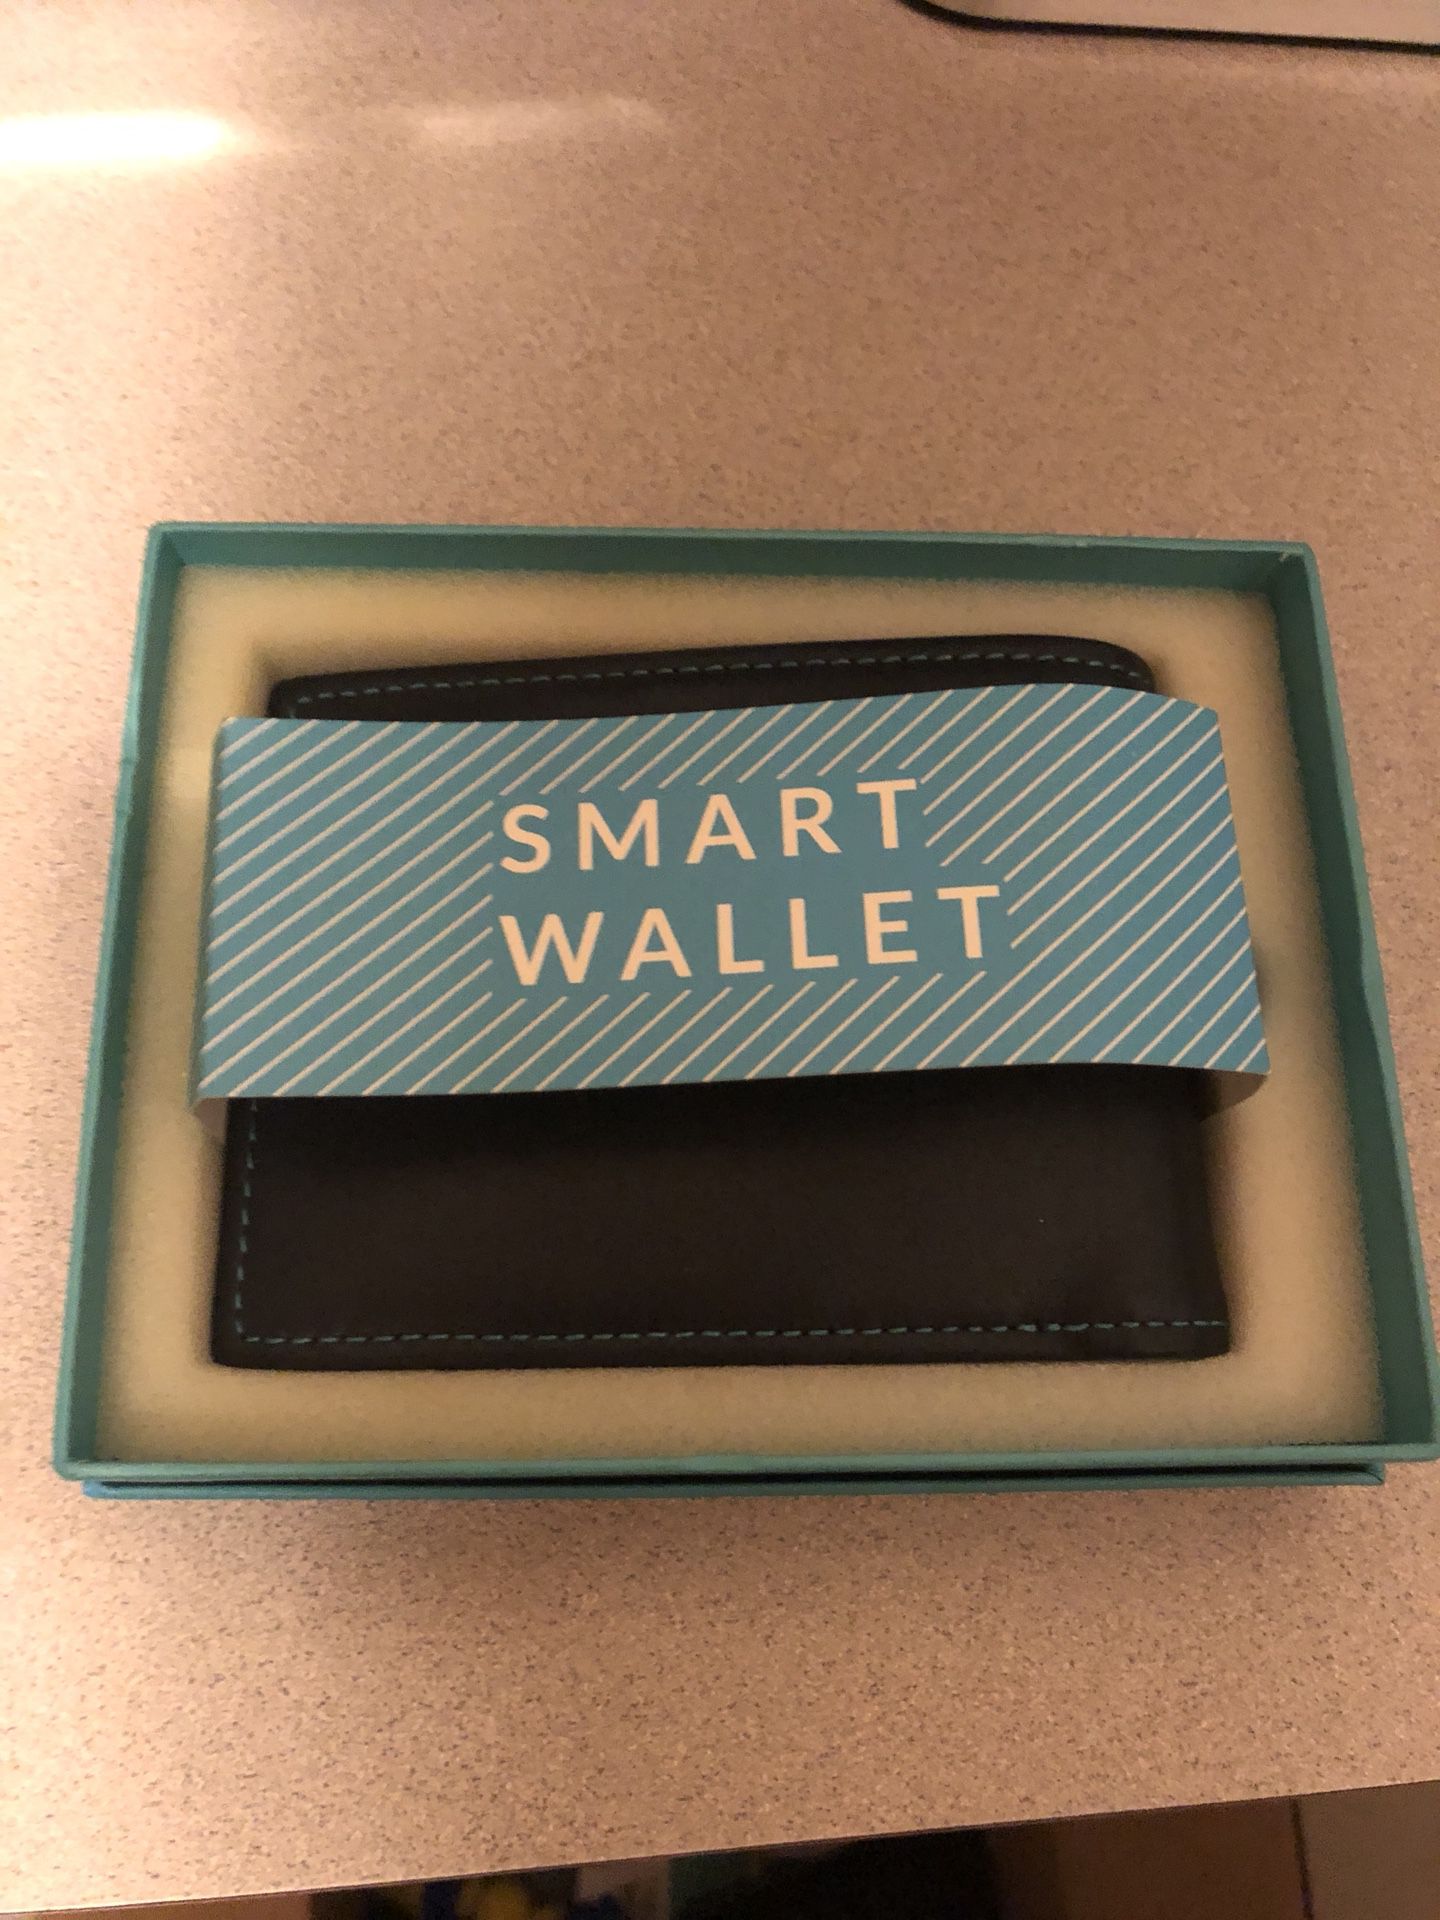 Walli Smart wallet